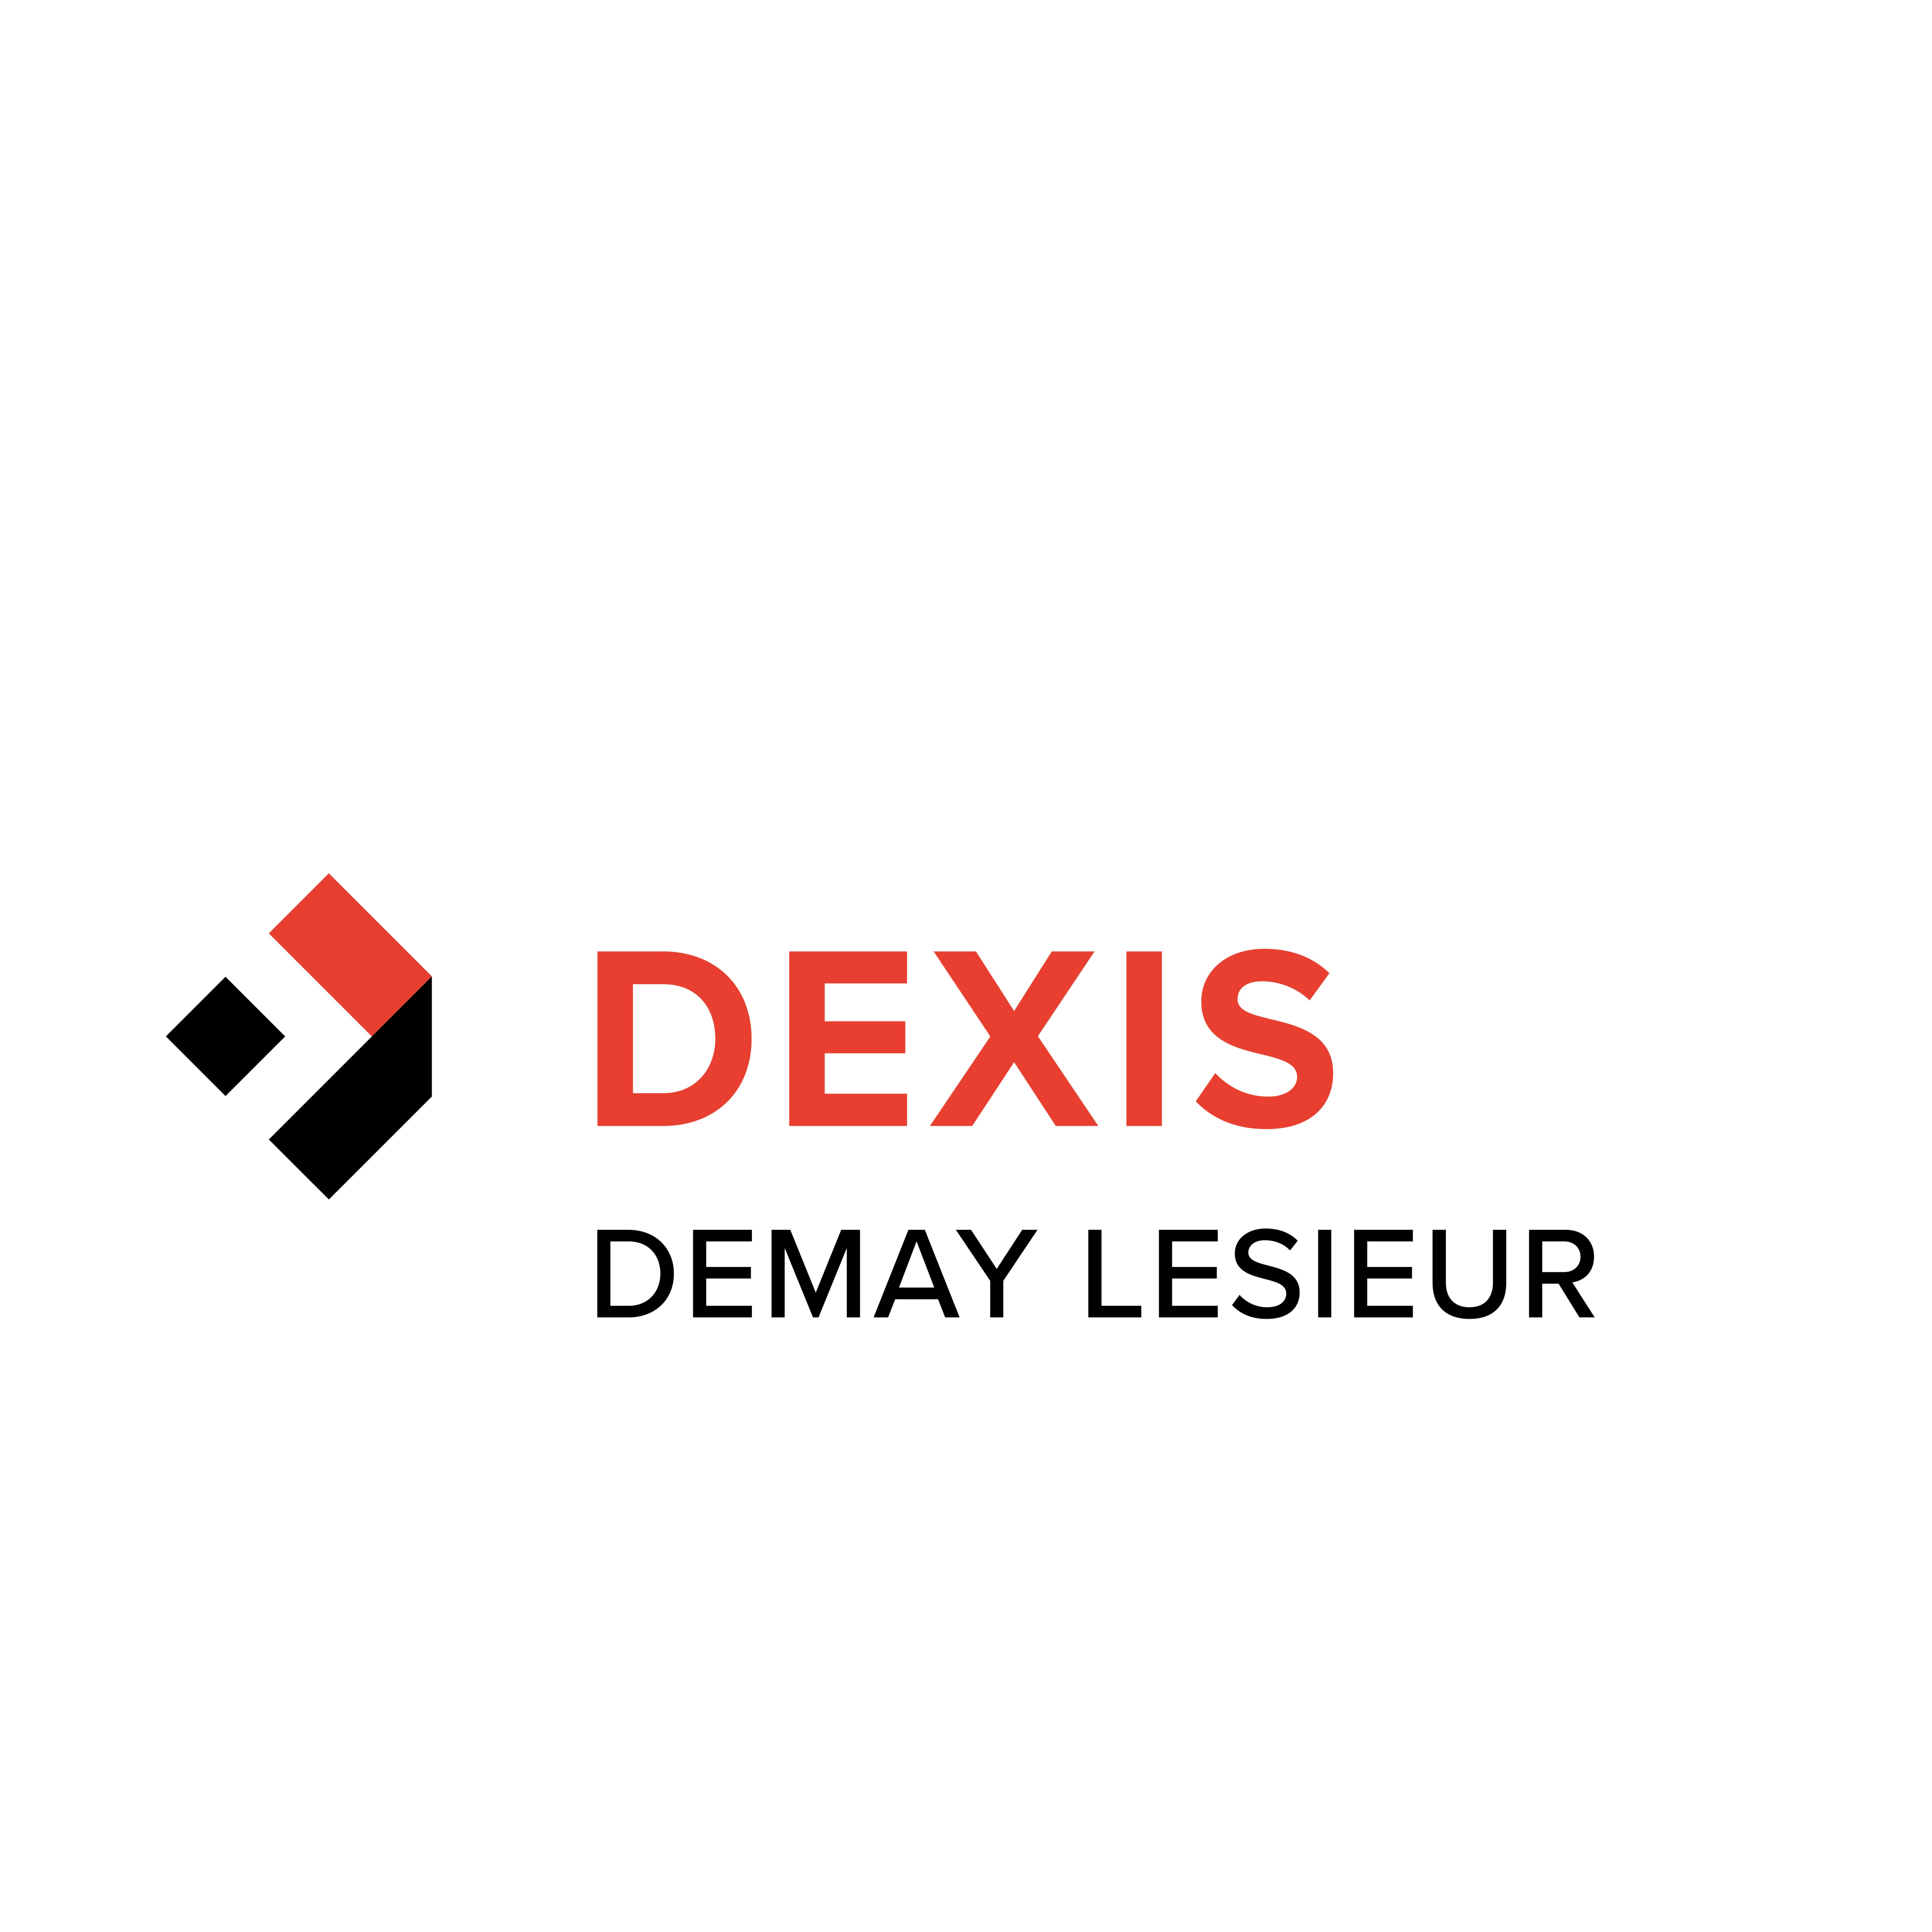 DEXIS DEMAY LESIEUR